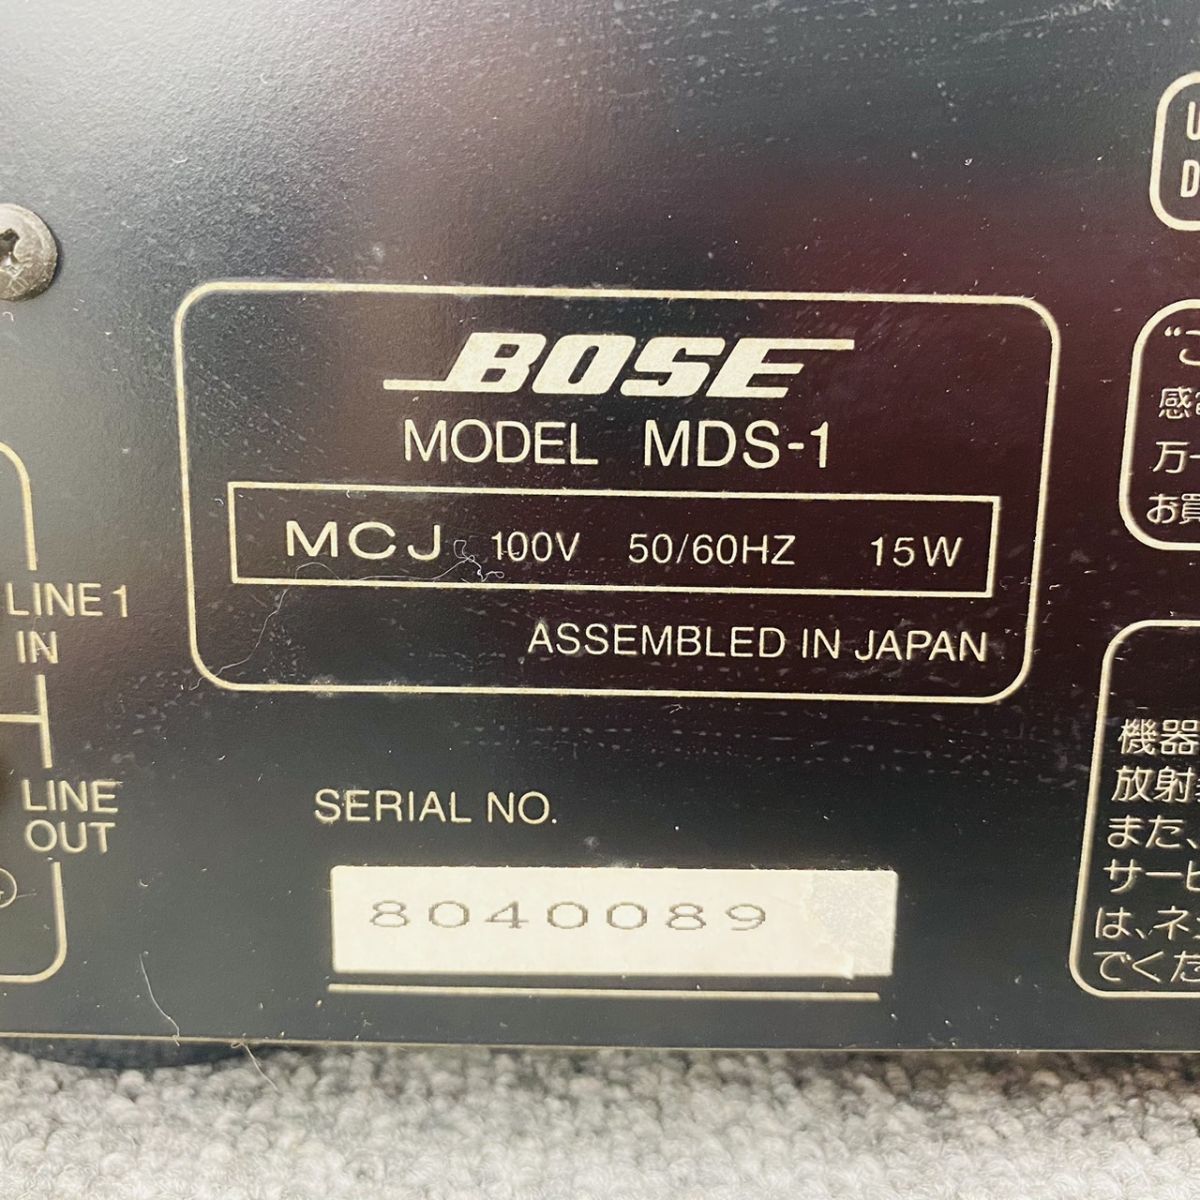 G061-H21-723 BOSE ボーズ MDS-1 コンパクトMDレコーダー S/N 8040089 通電確認済_画像6